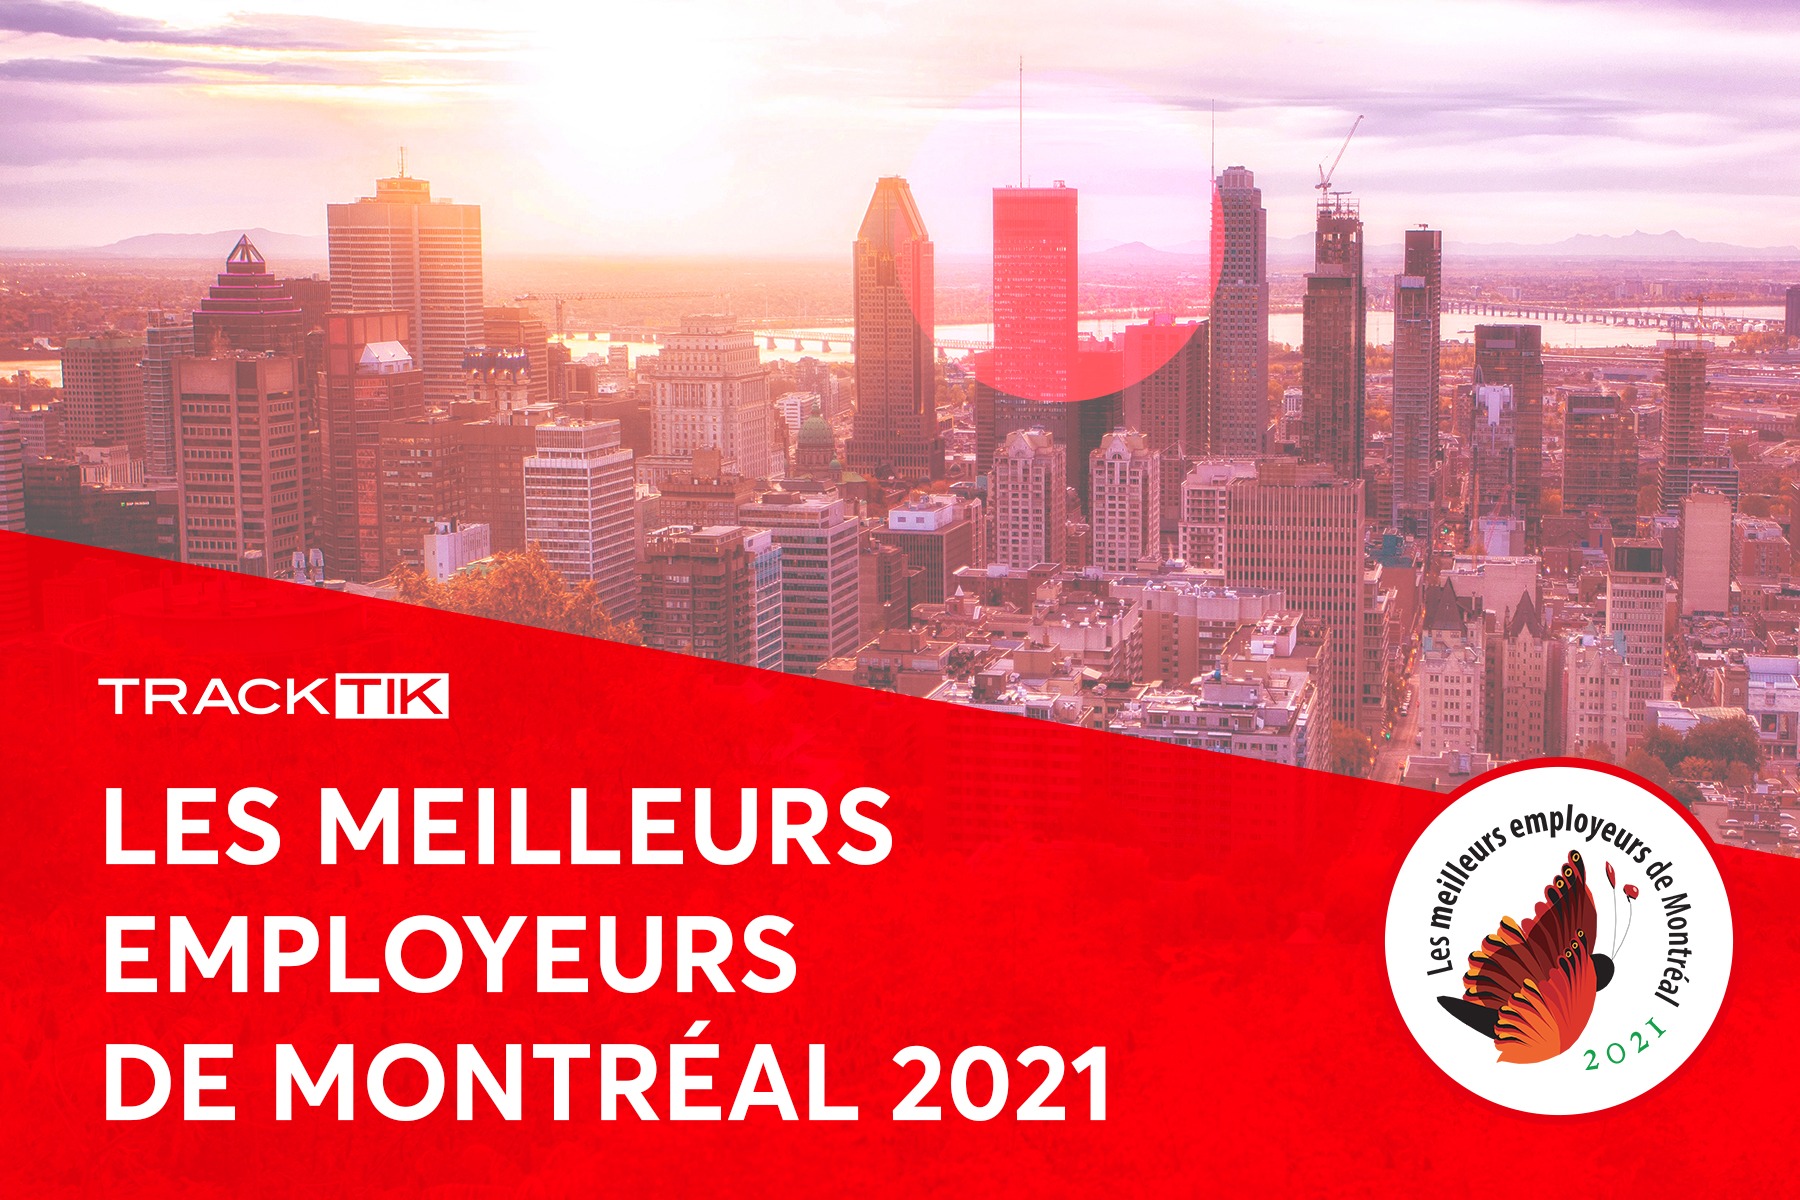 Logiciel TrackTik nommé l’un des meilleurs employeurs à Montréal pour l’année 2021